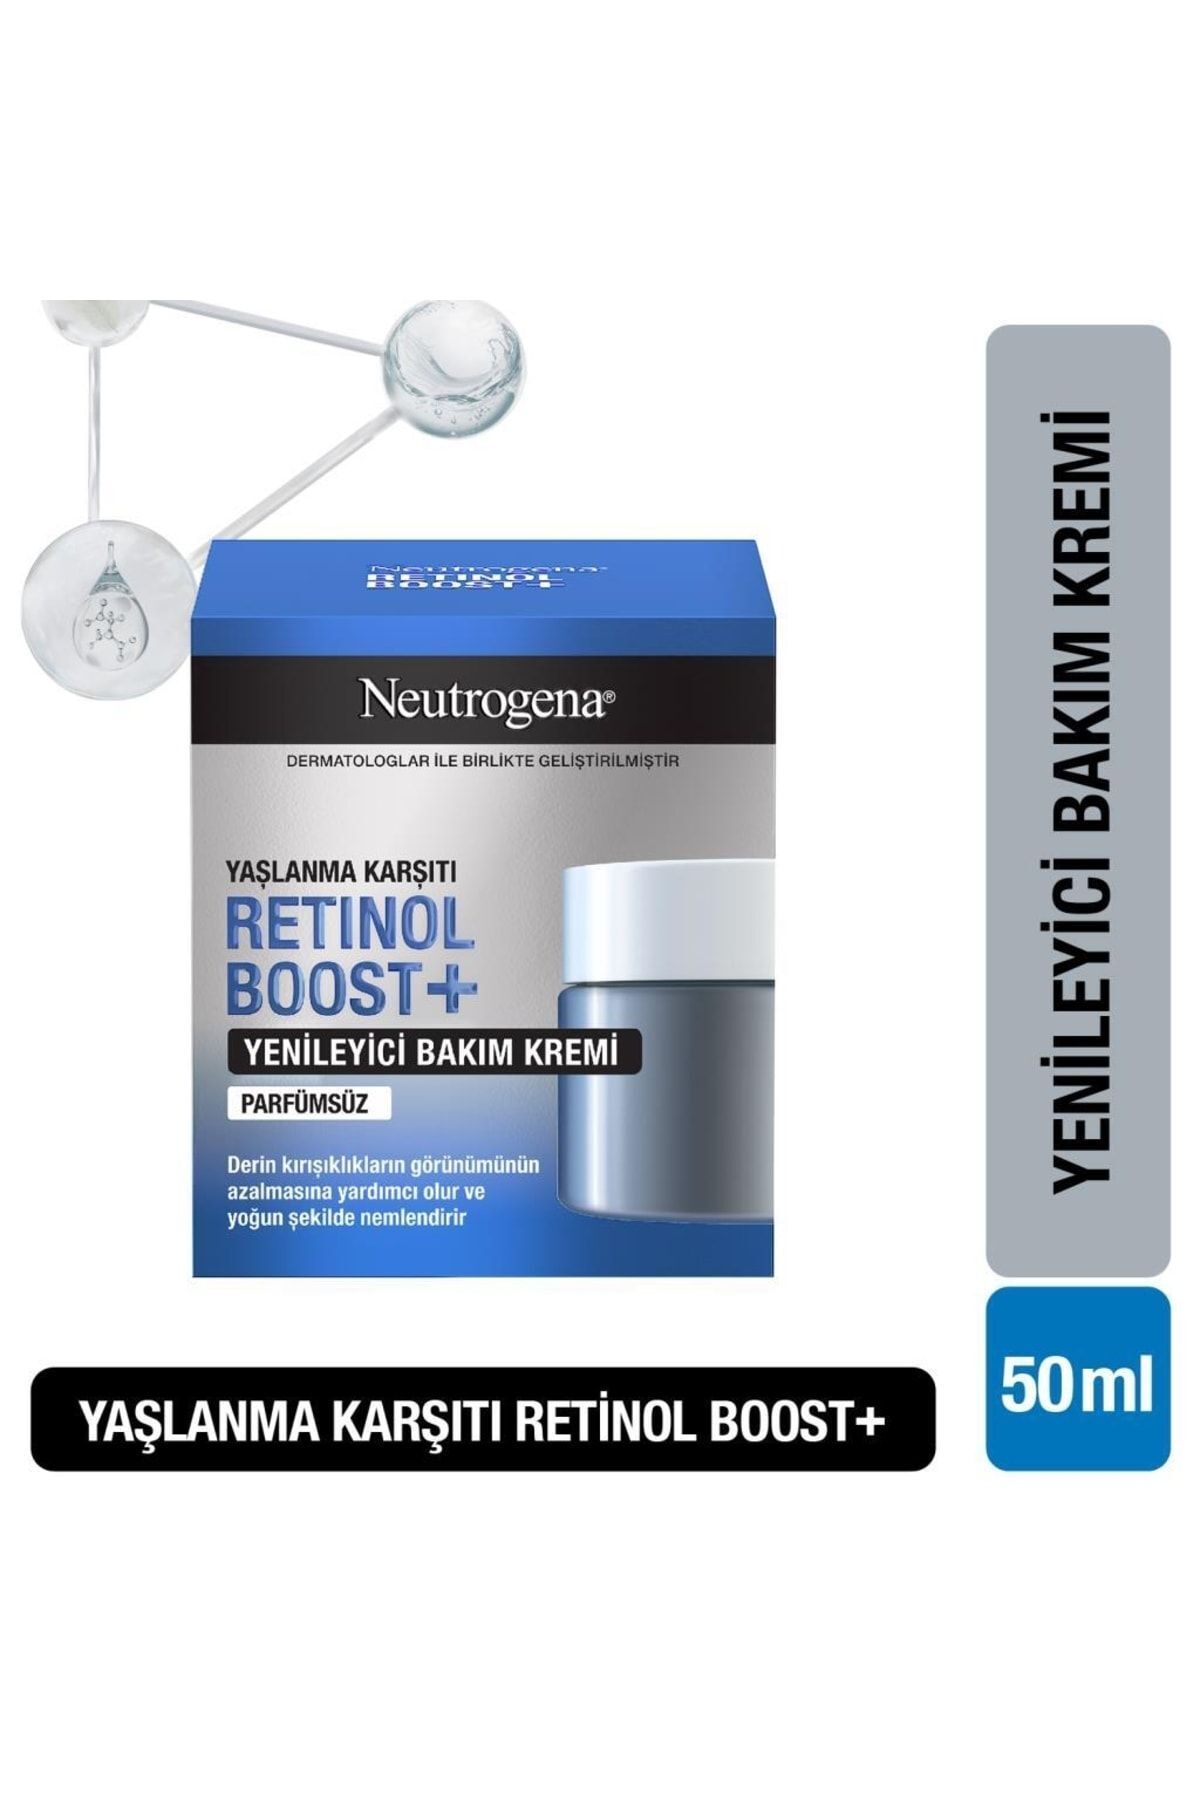 Neutrogena Retinol Boost Kırışıklık Karşıtı Yenileyici Bakım Kremi Antiaging